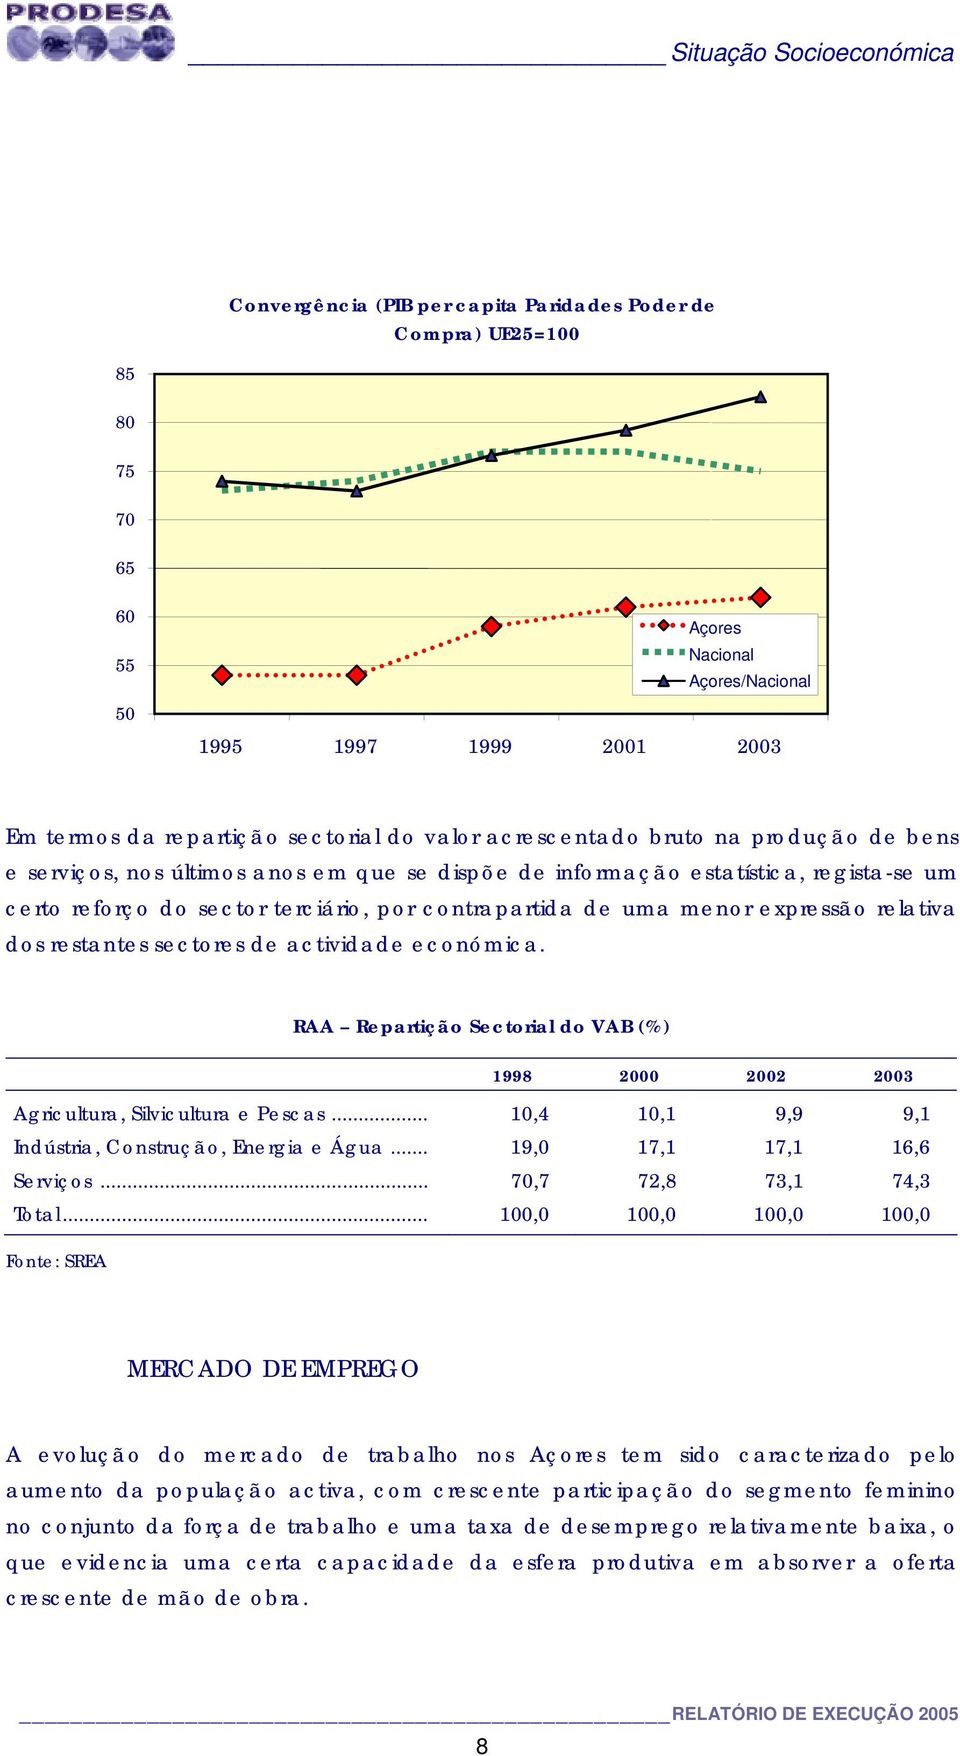 de uma menor expressão relativa dos restantes sectores de actividade económica. RAA Repartição Sectorial do VAB (%) 1998 2000 2002 2003 Agricultura, Silvicultura e Pescas.